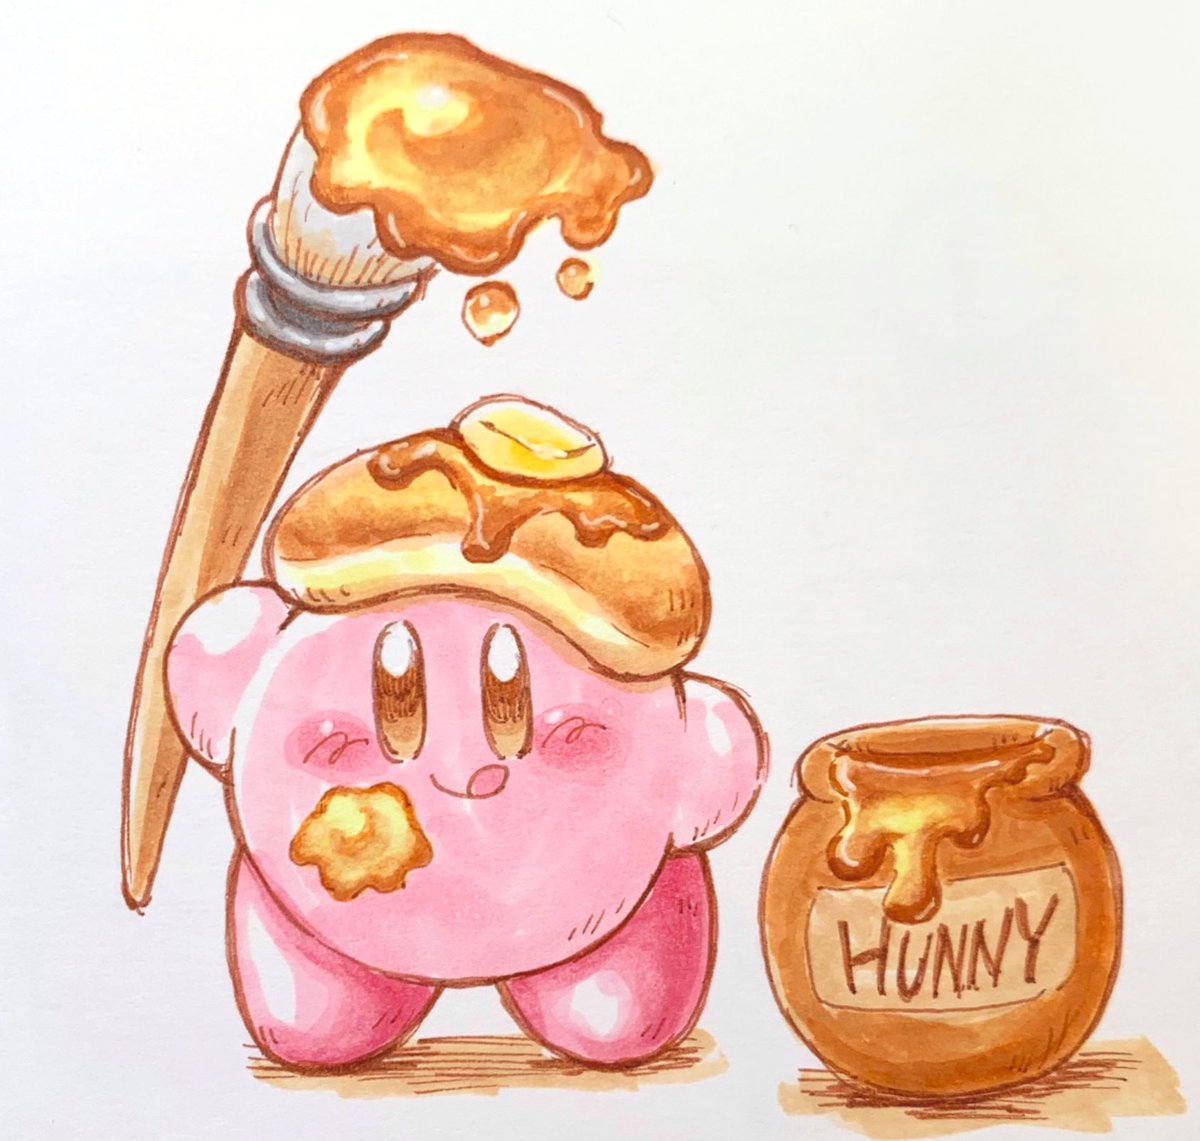 あら カービィ 在 Twitter 上 ハニースト カービィ イラスト コピック Kirby Illust Copic T Co Meah930lsw Twitter